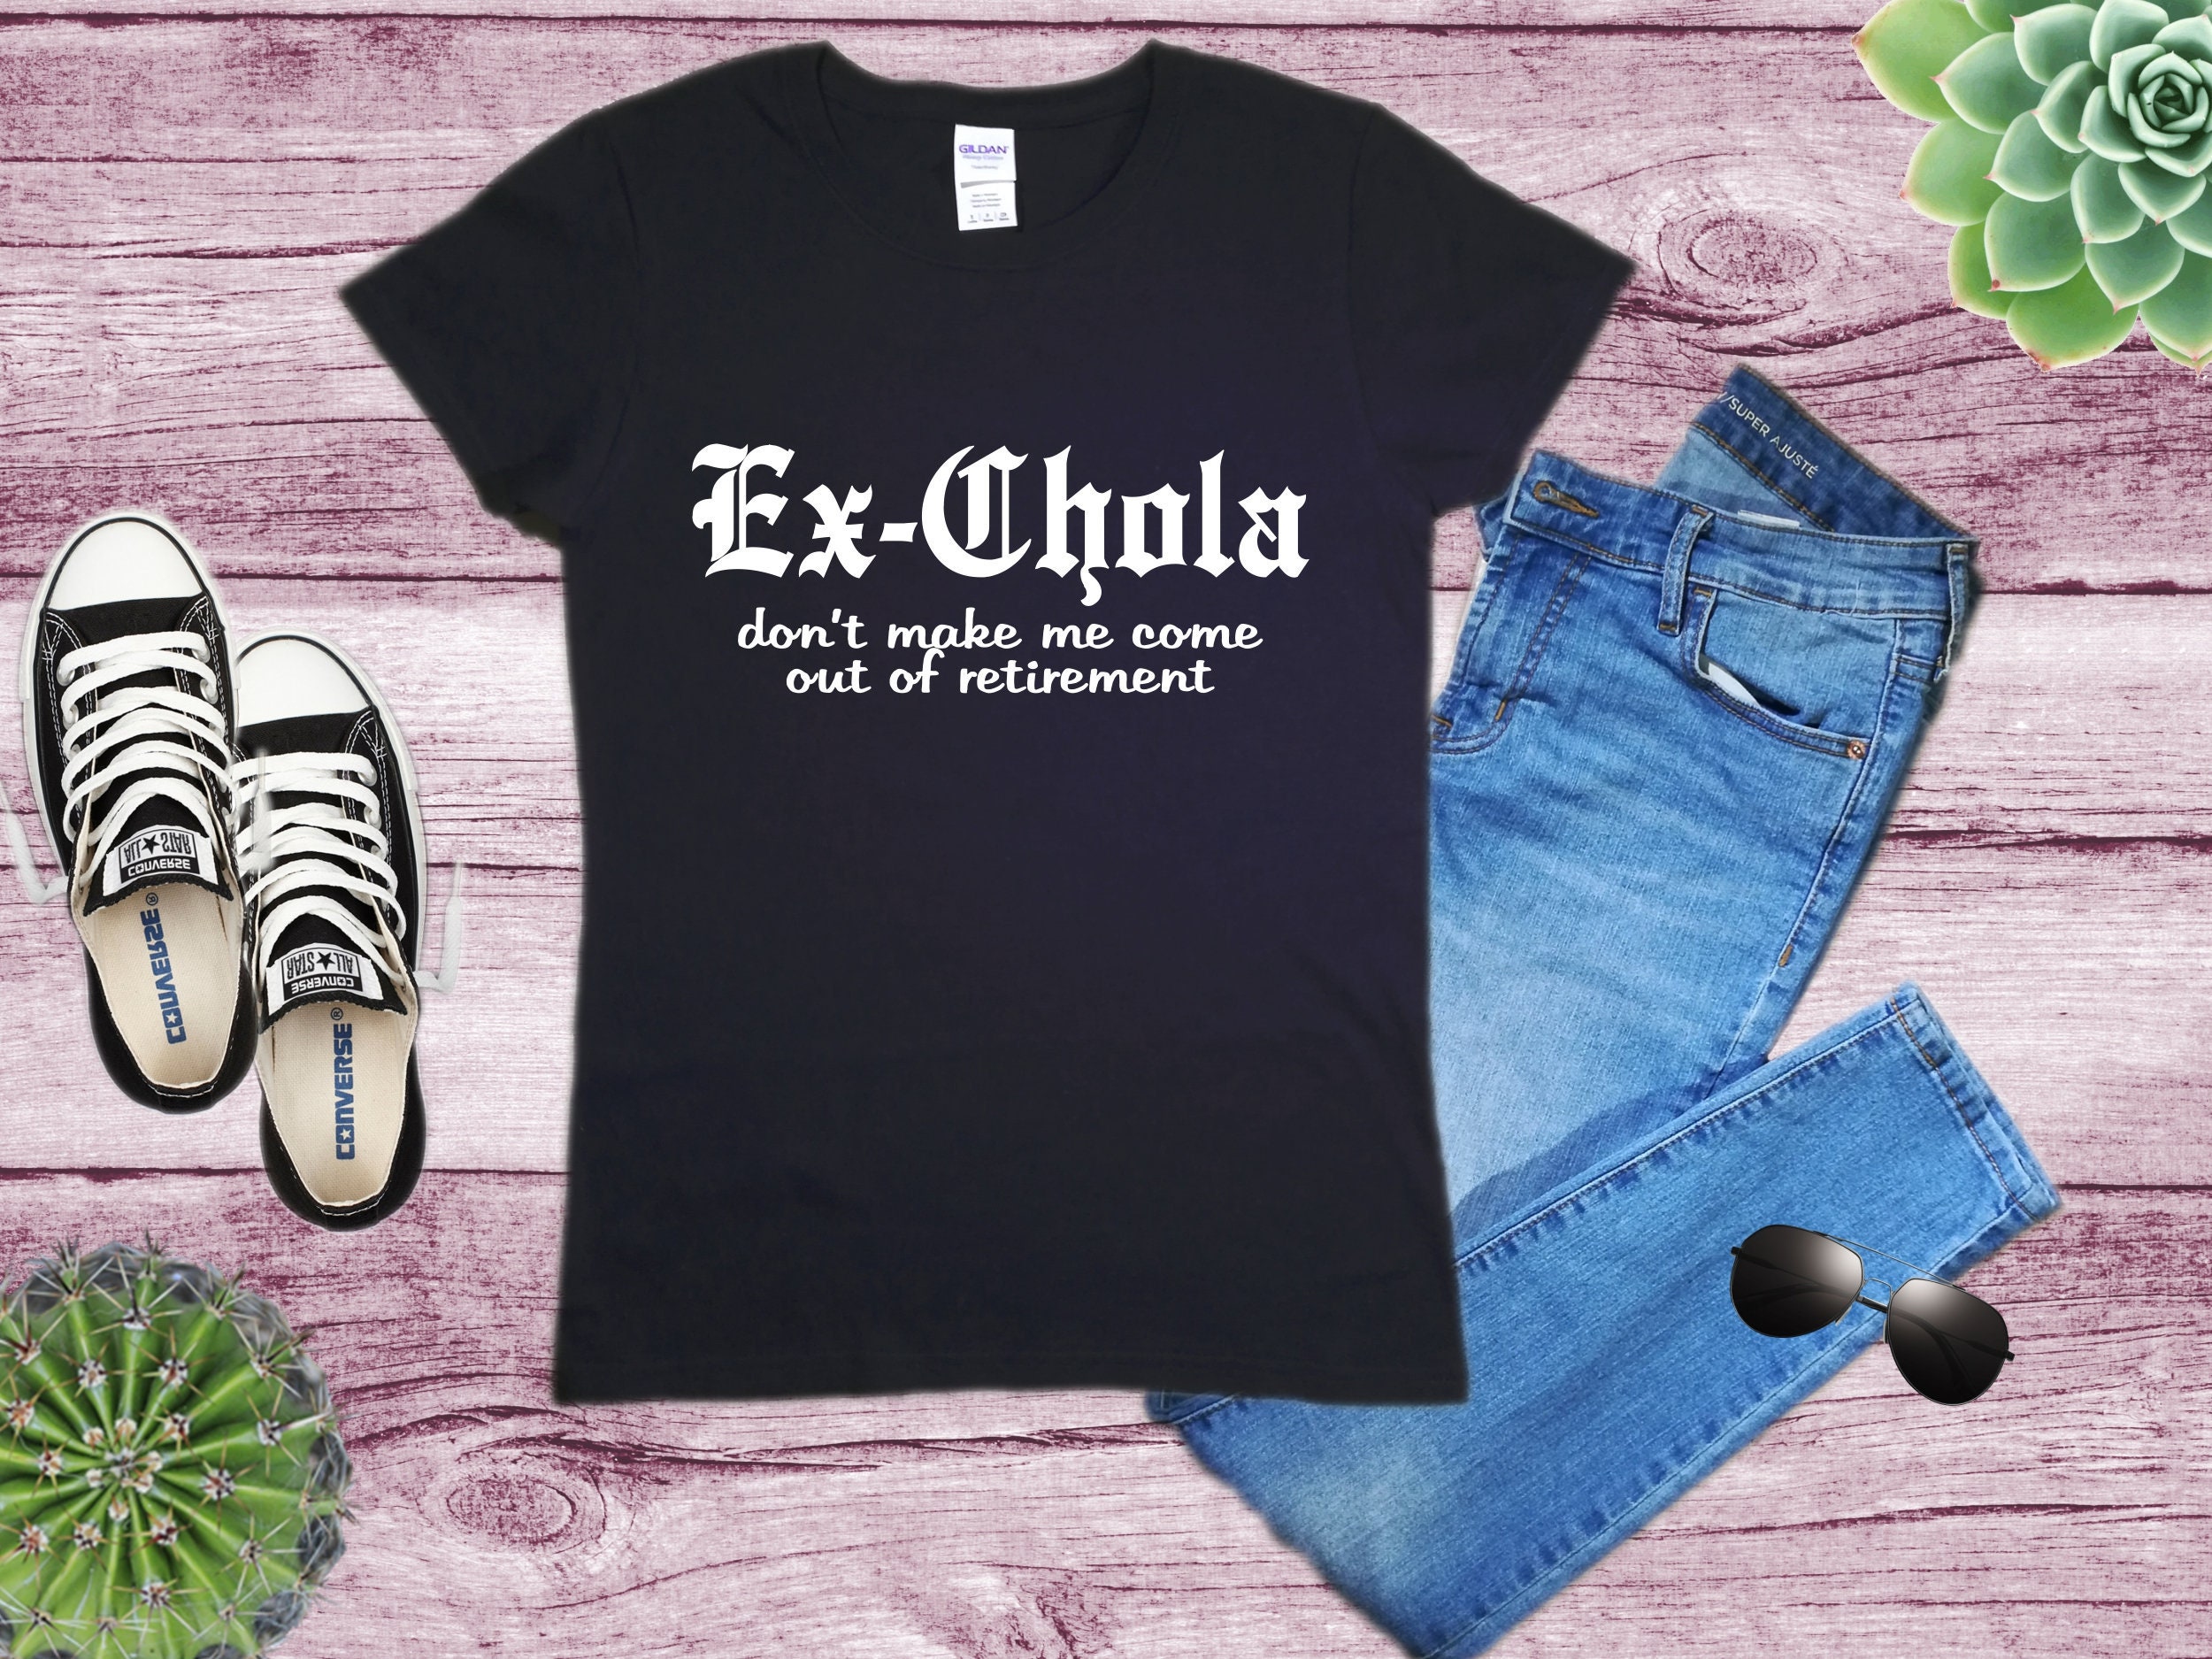 Chola Clothing - Etsy